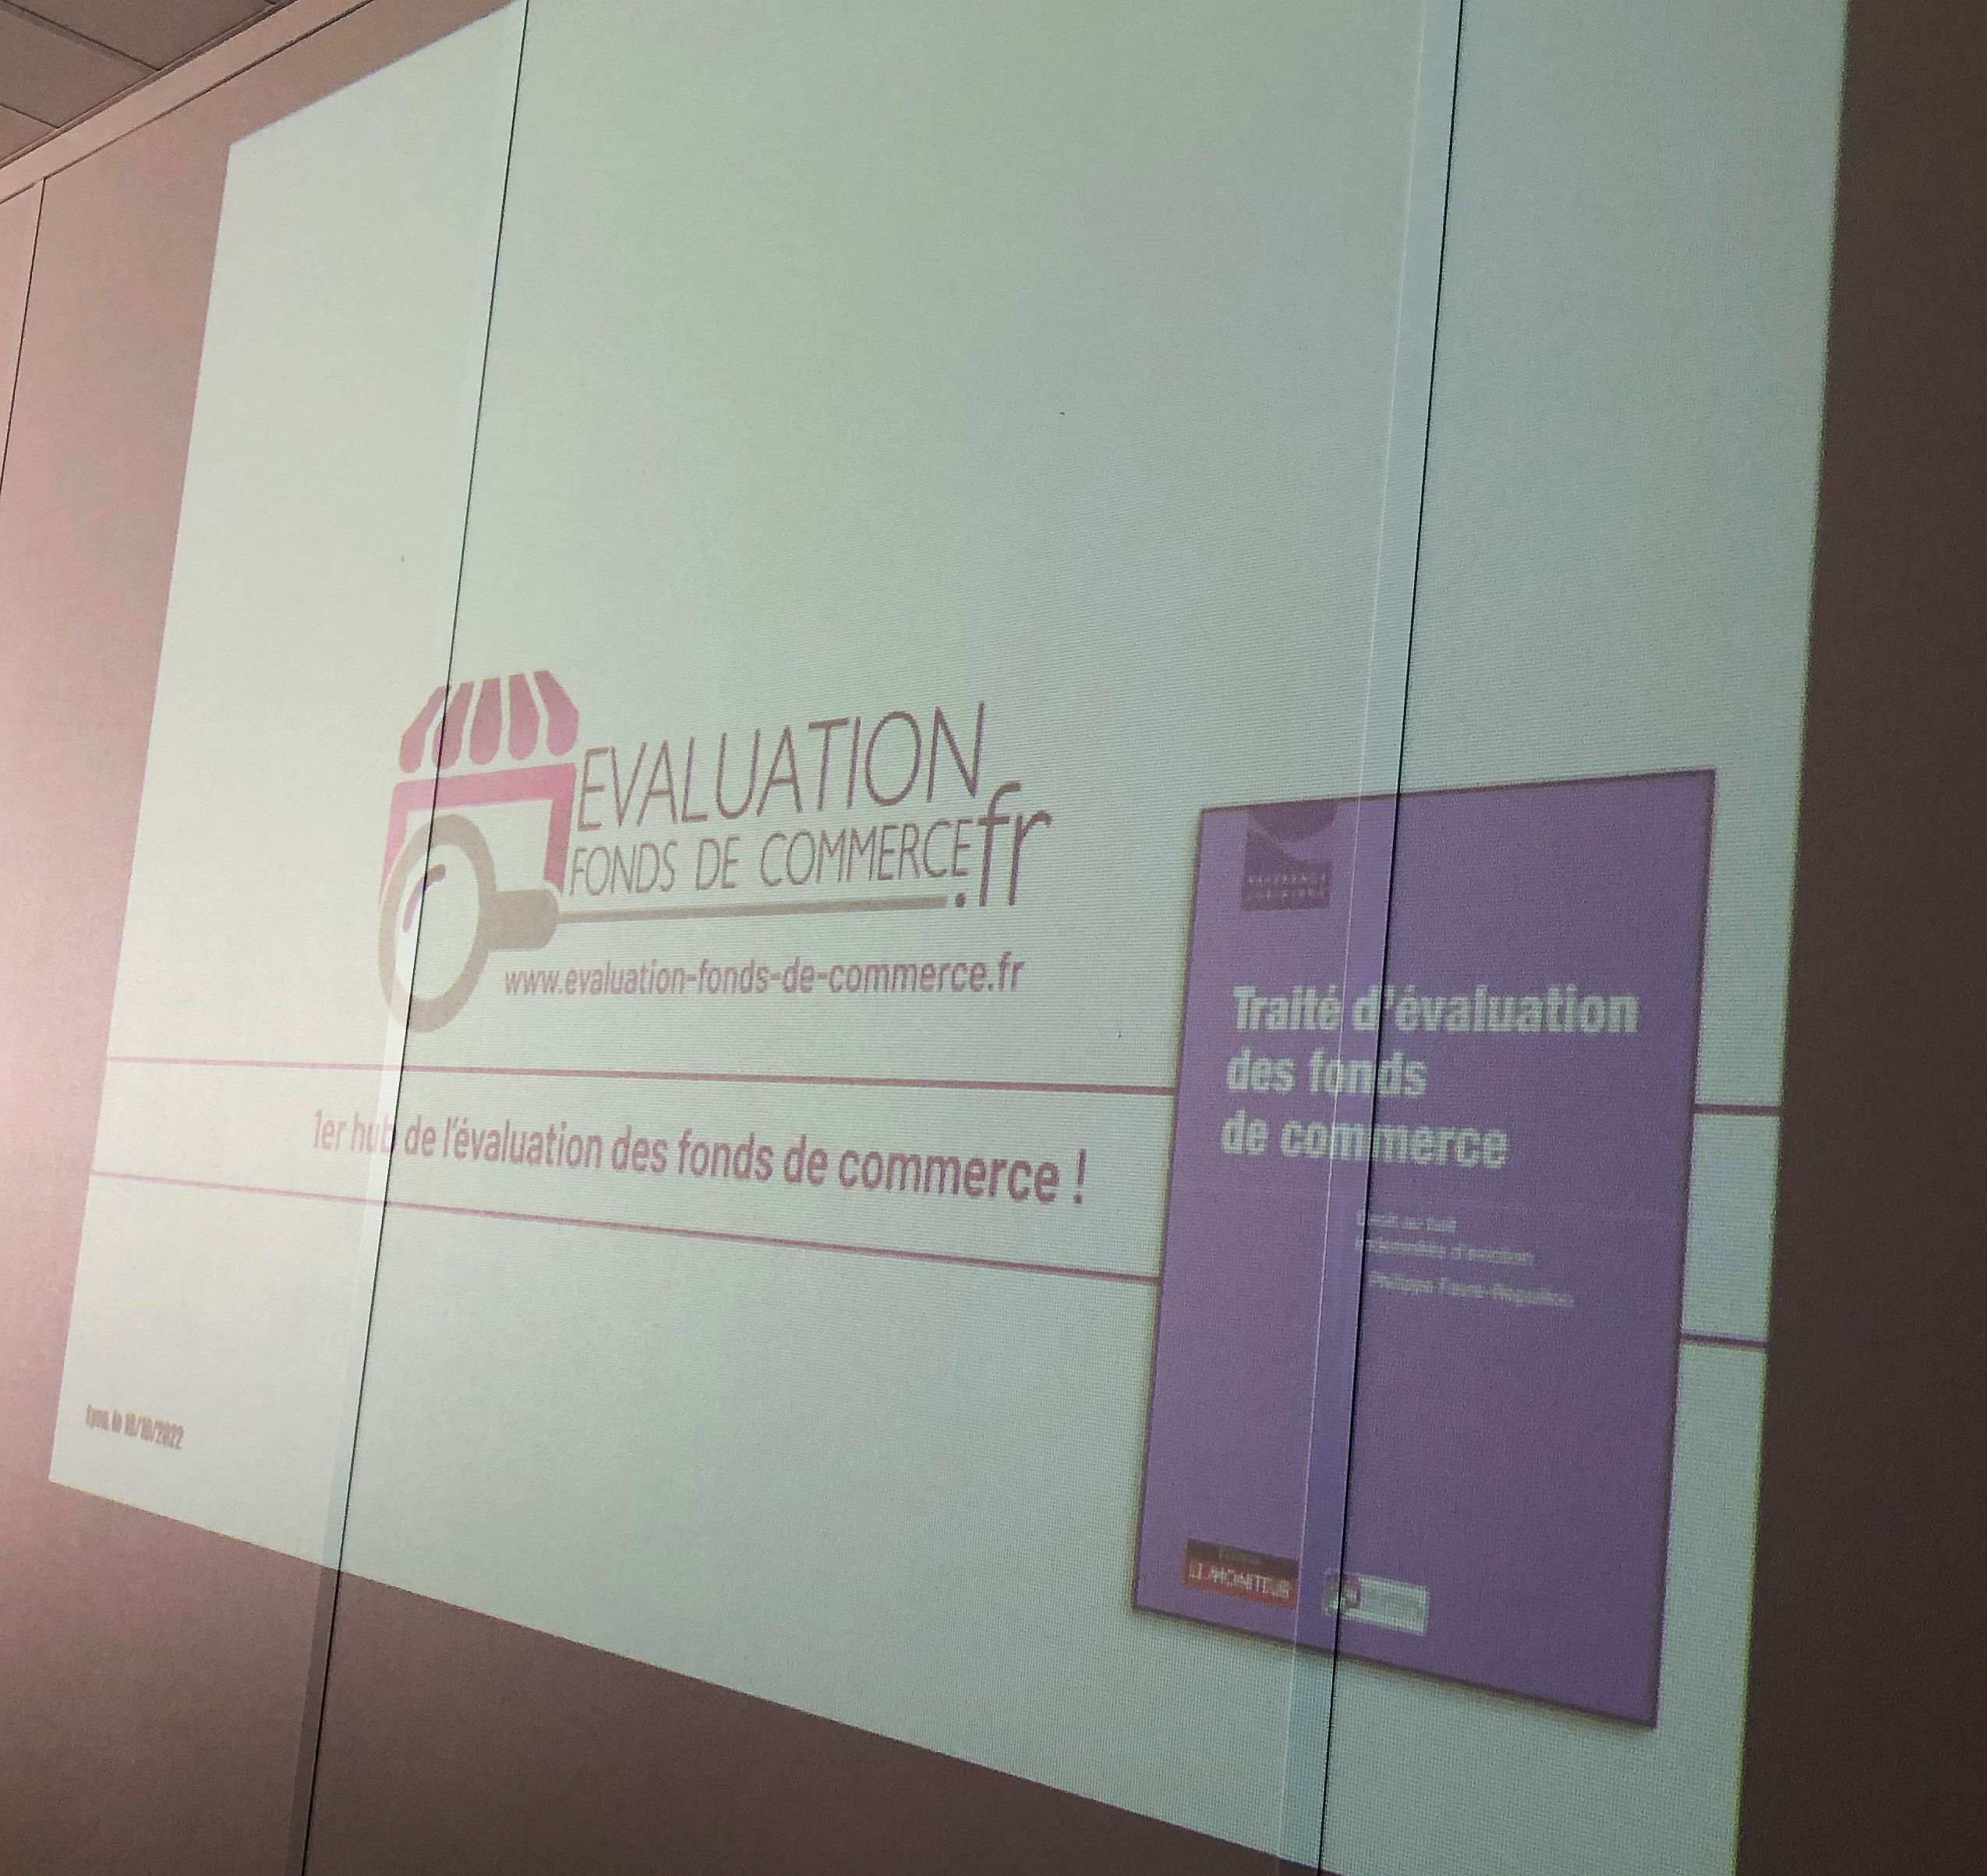 intervention de Philippe Favre-Réguillon auprès du Grand Lyon pour la présentation du site www.evaluation-fonds--de-commerce.fr